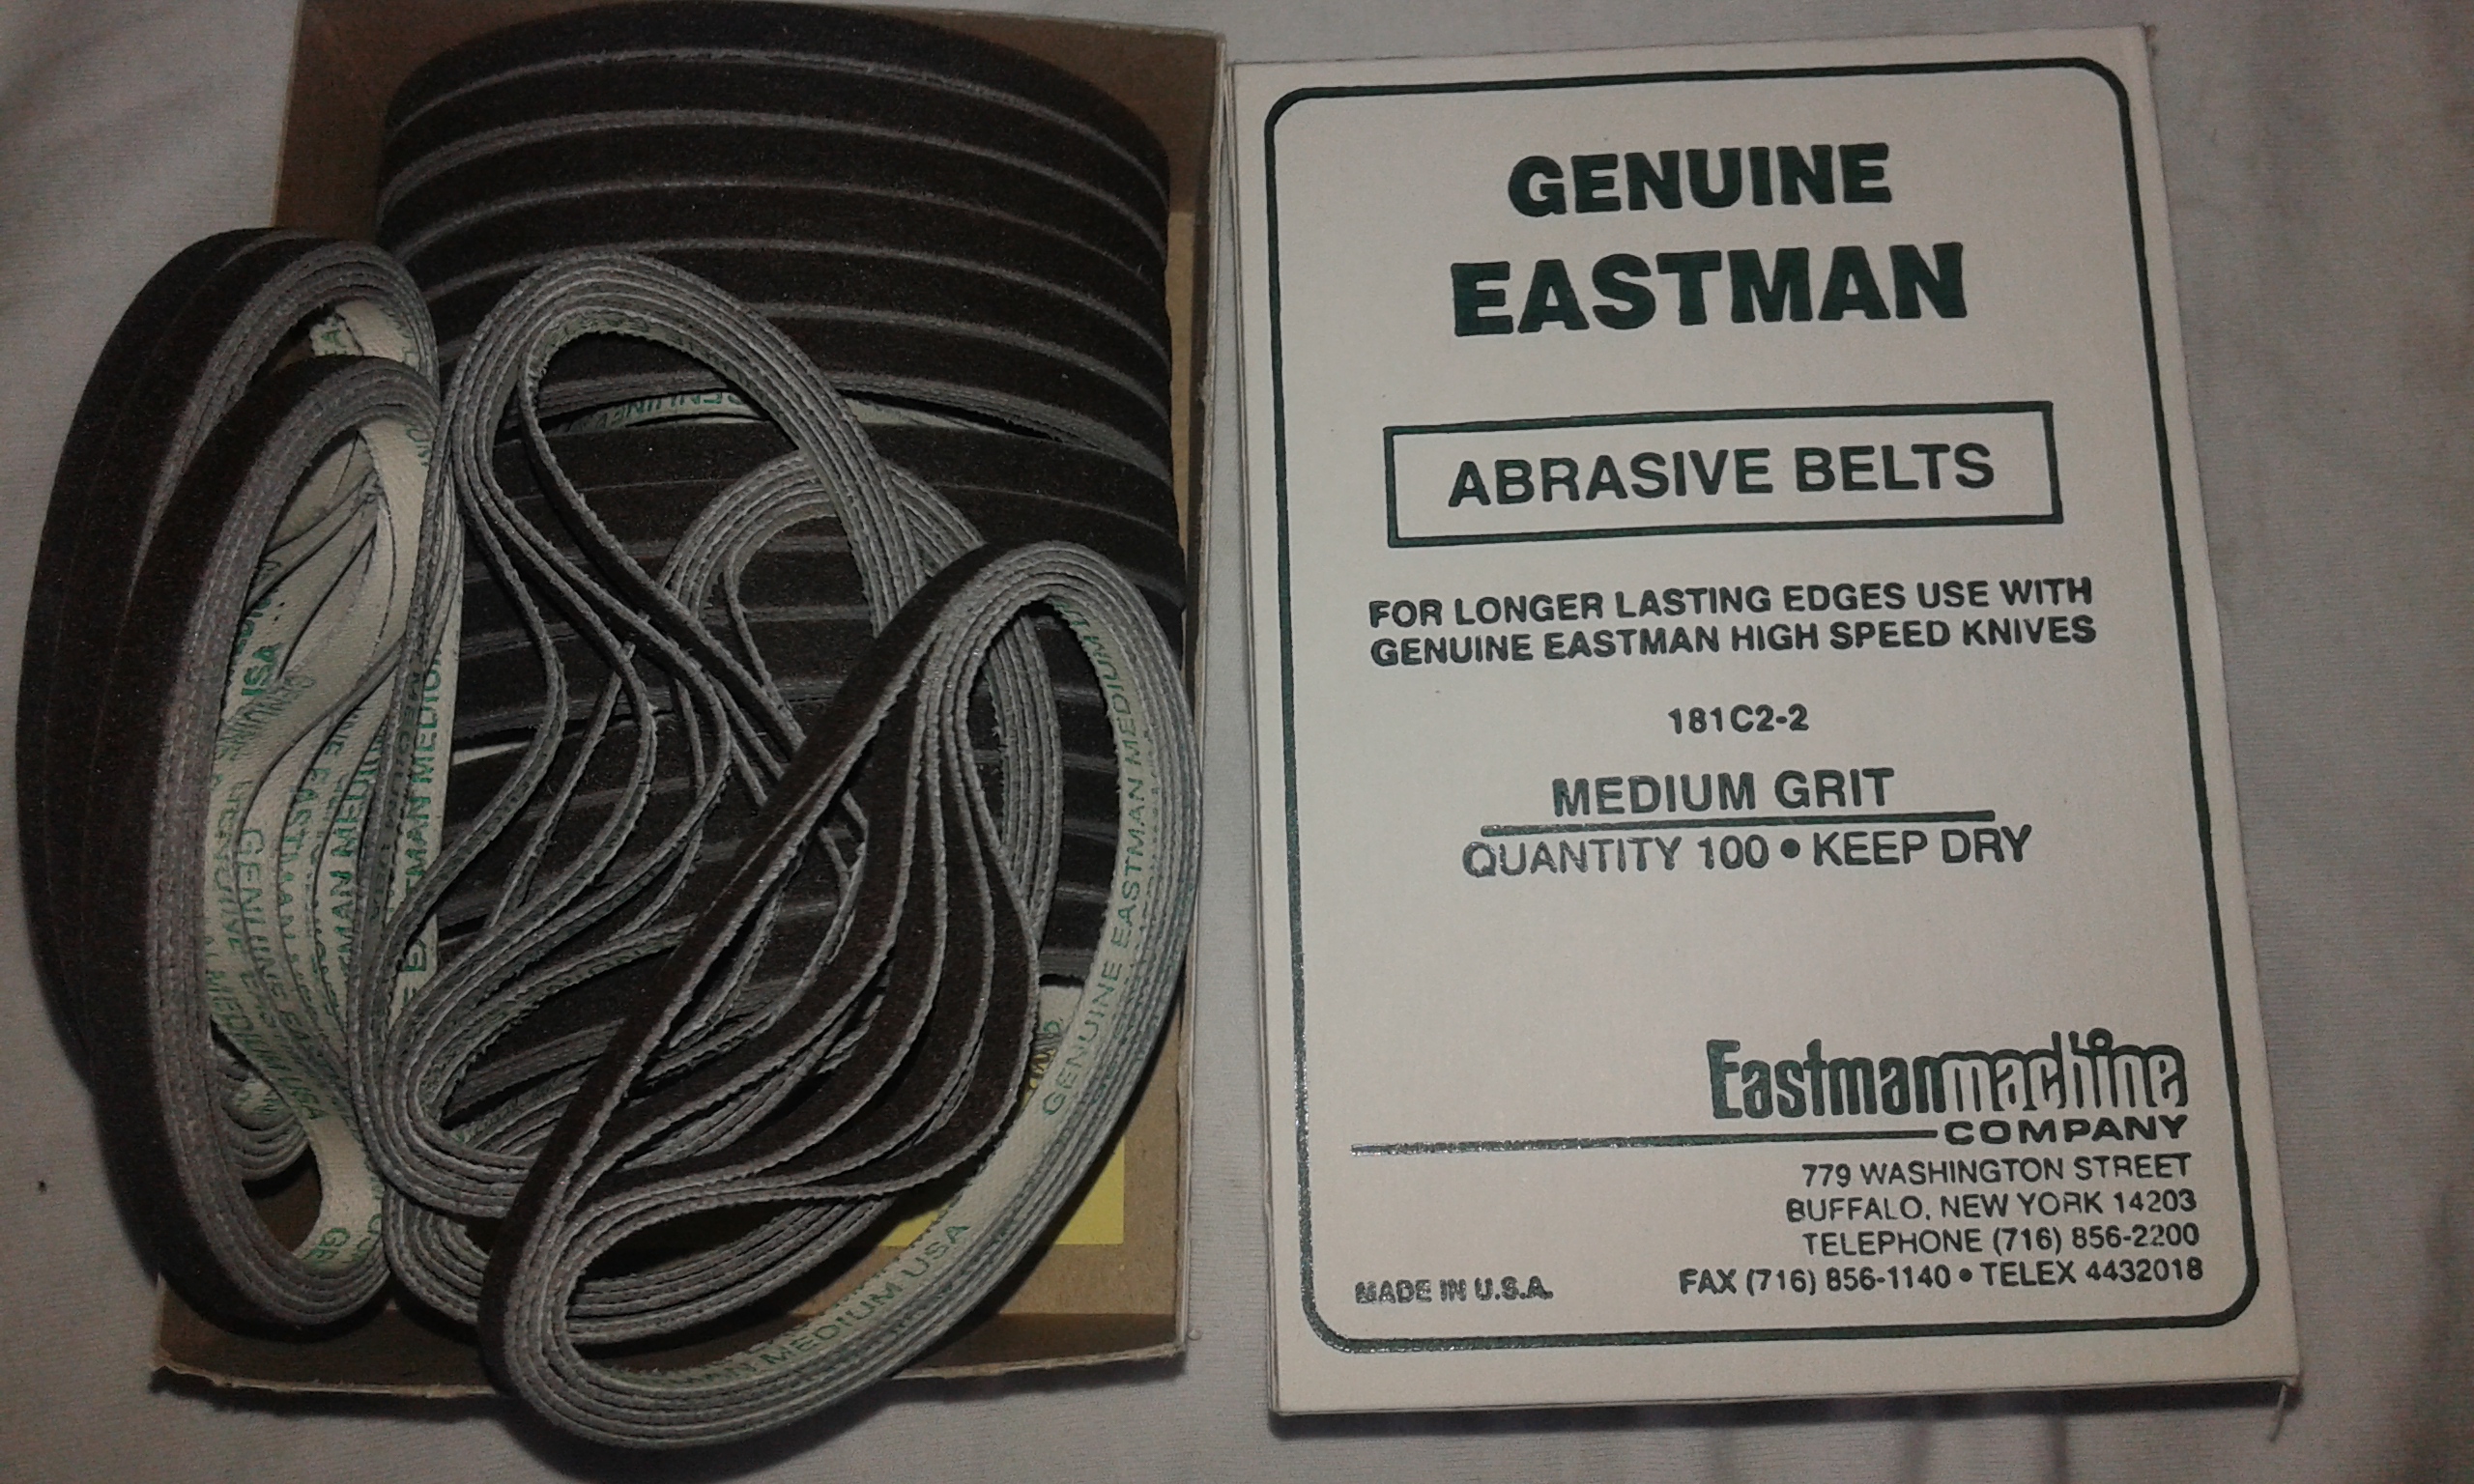 Eastman Model Dik Bıçak Kumaş Kesim Motoru Bileme Şeridi, Promethe Elektronik, Kumaş Kesim Motoru Bakım-Onarım Ve Tamir Servisi, İletişim: (+90) 0538 749 34 59